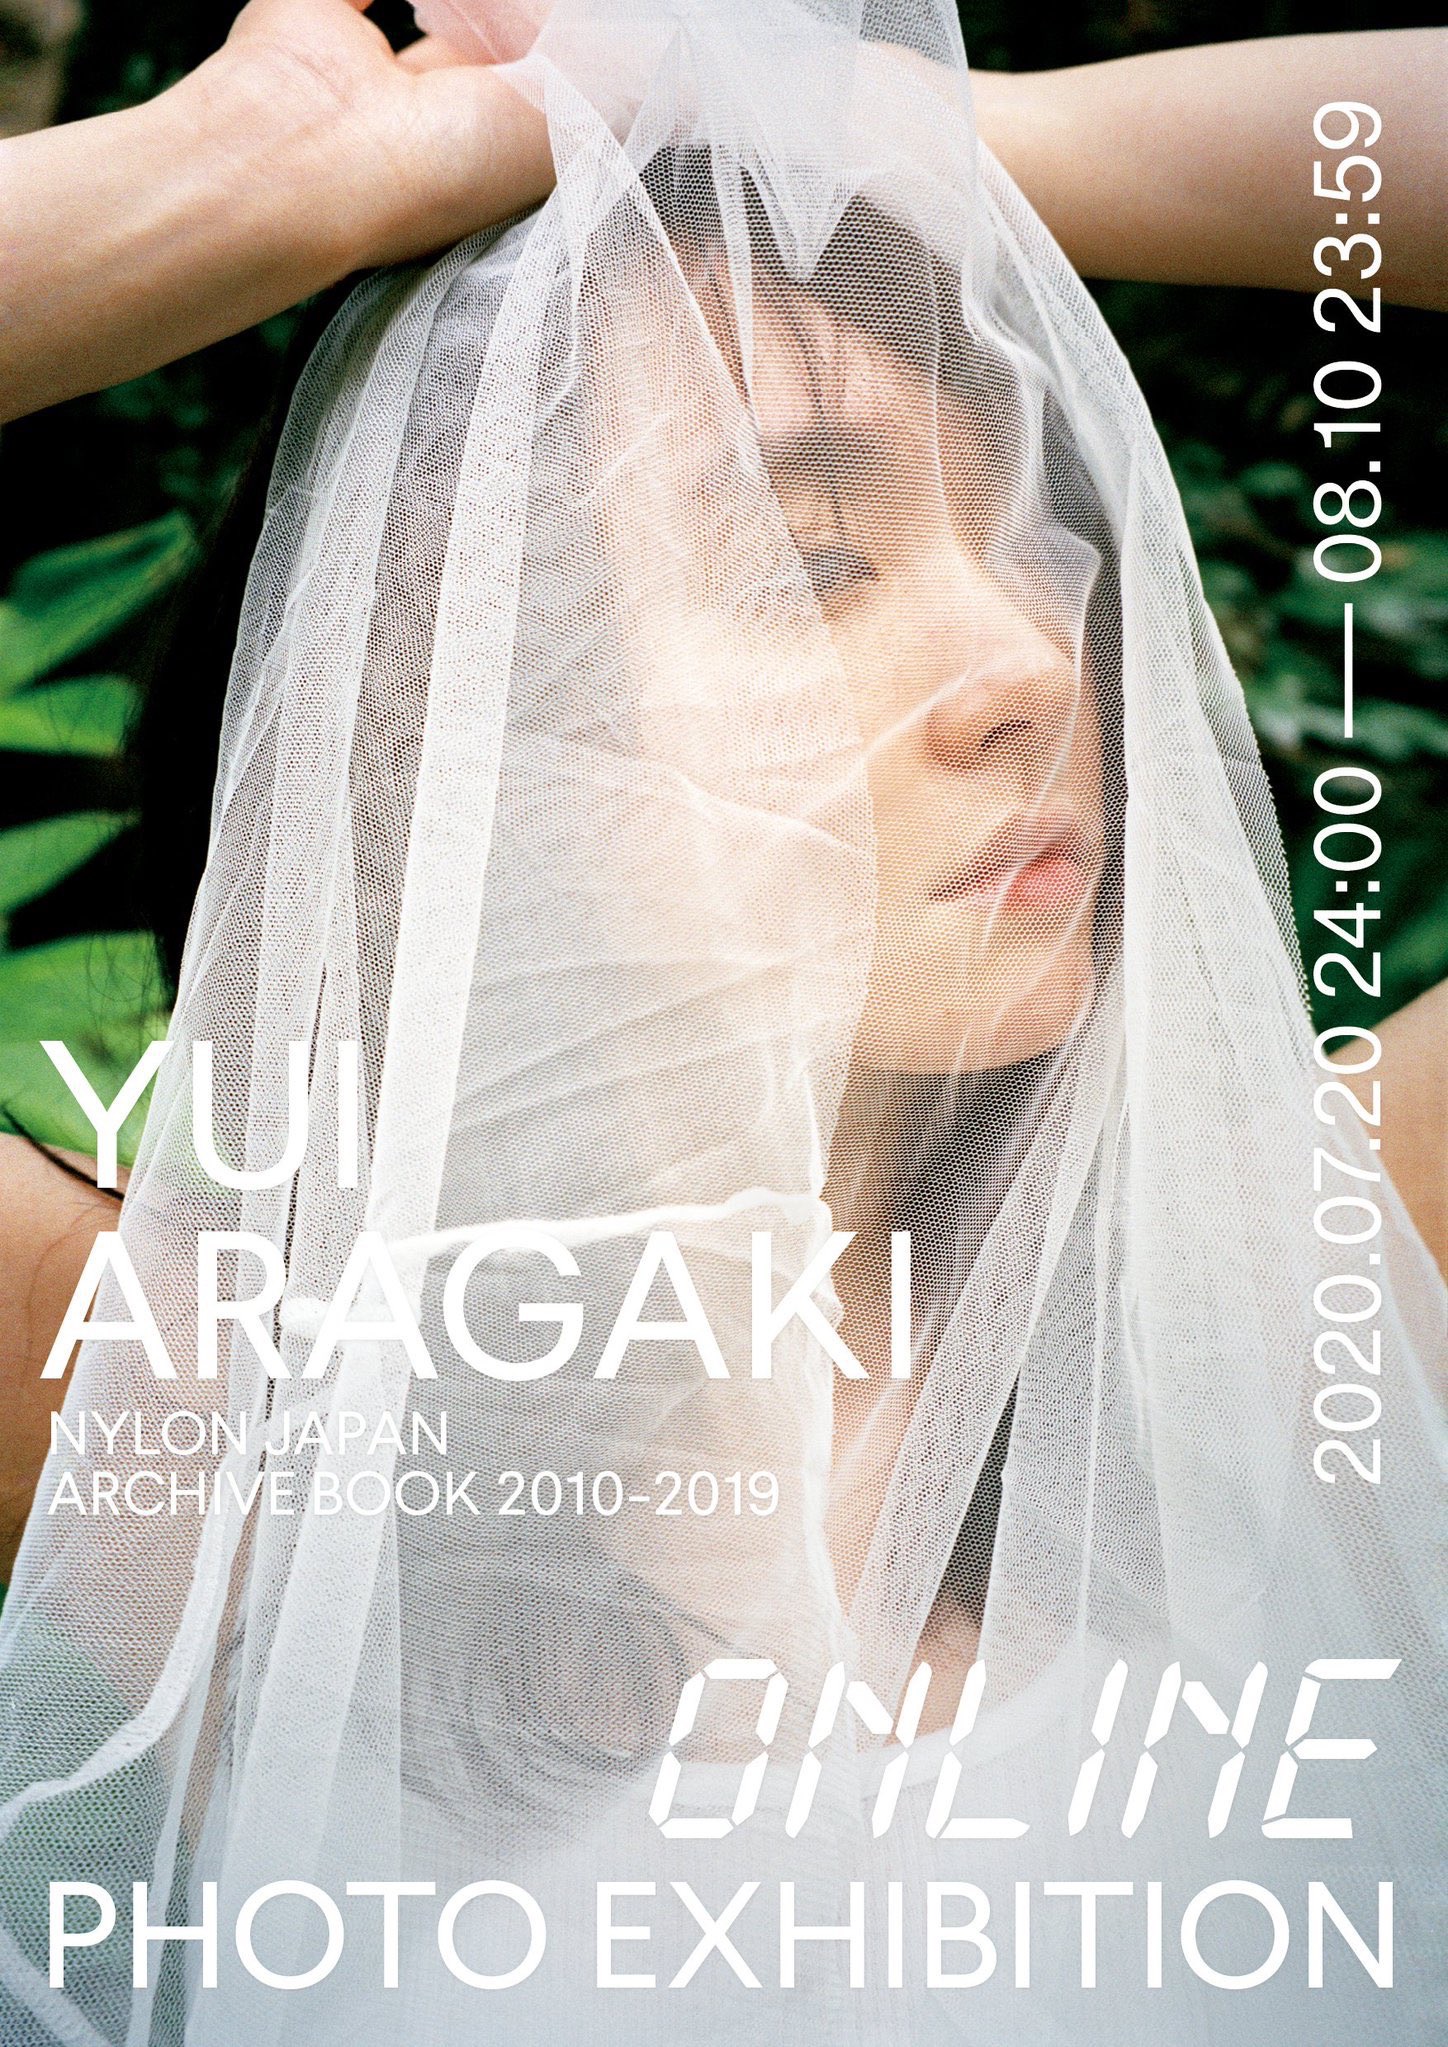 女優・新垣結衣の写真展「YUI ARAGAKI NYLON JAPAN ARCHIVE BOOK 2010-2019 PHOTO EXHIBITION」